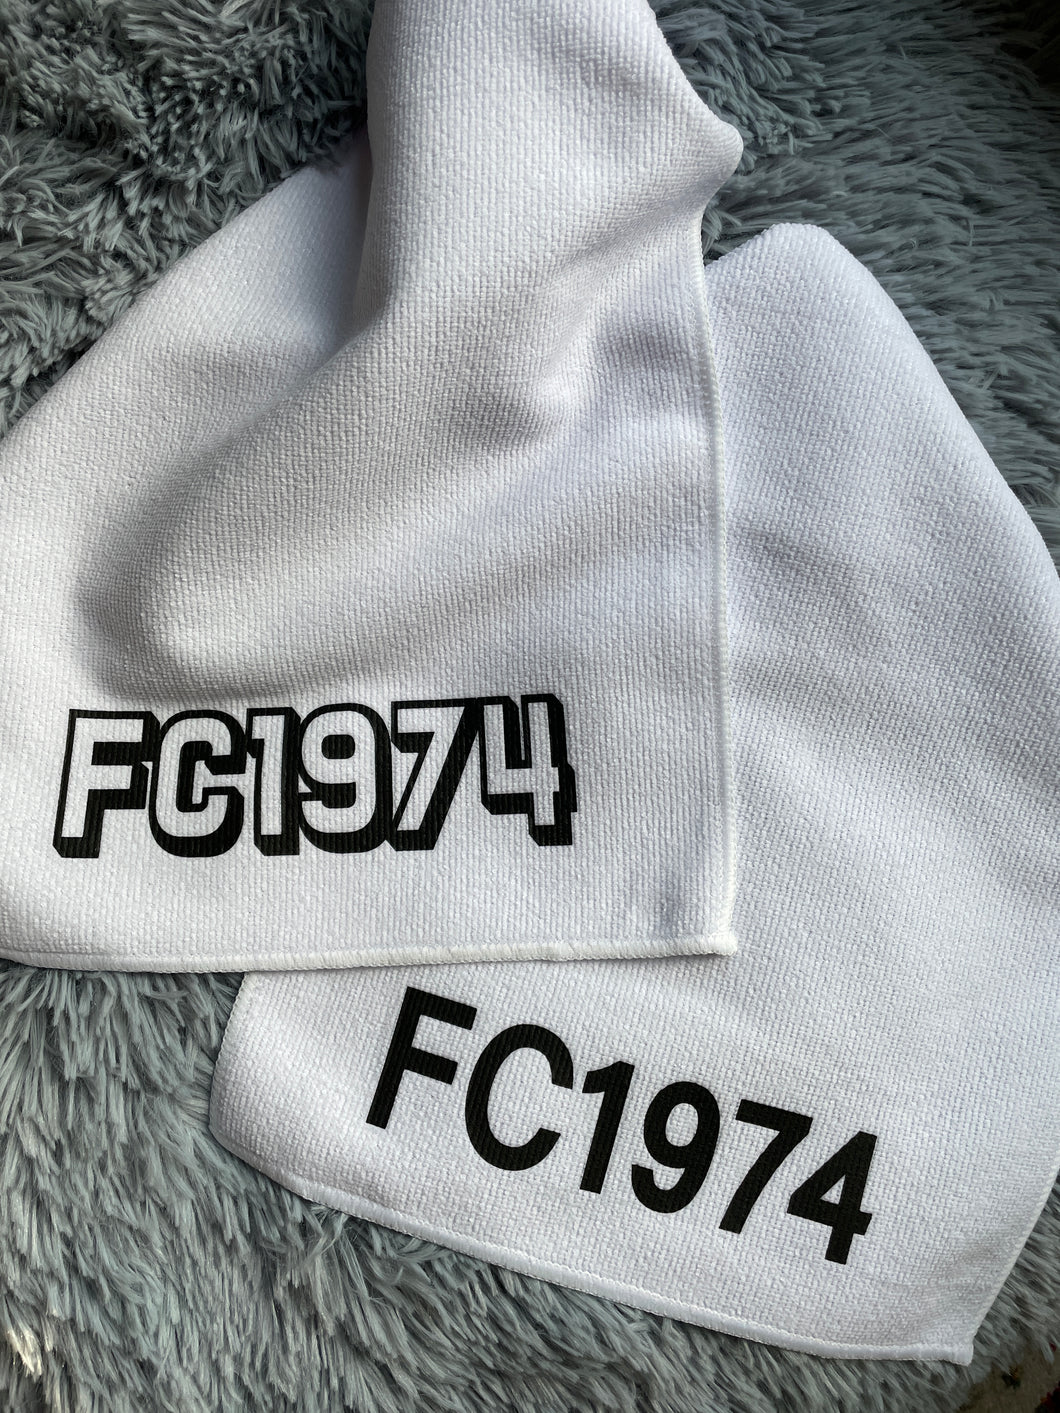 FC1974 Towel